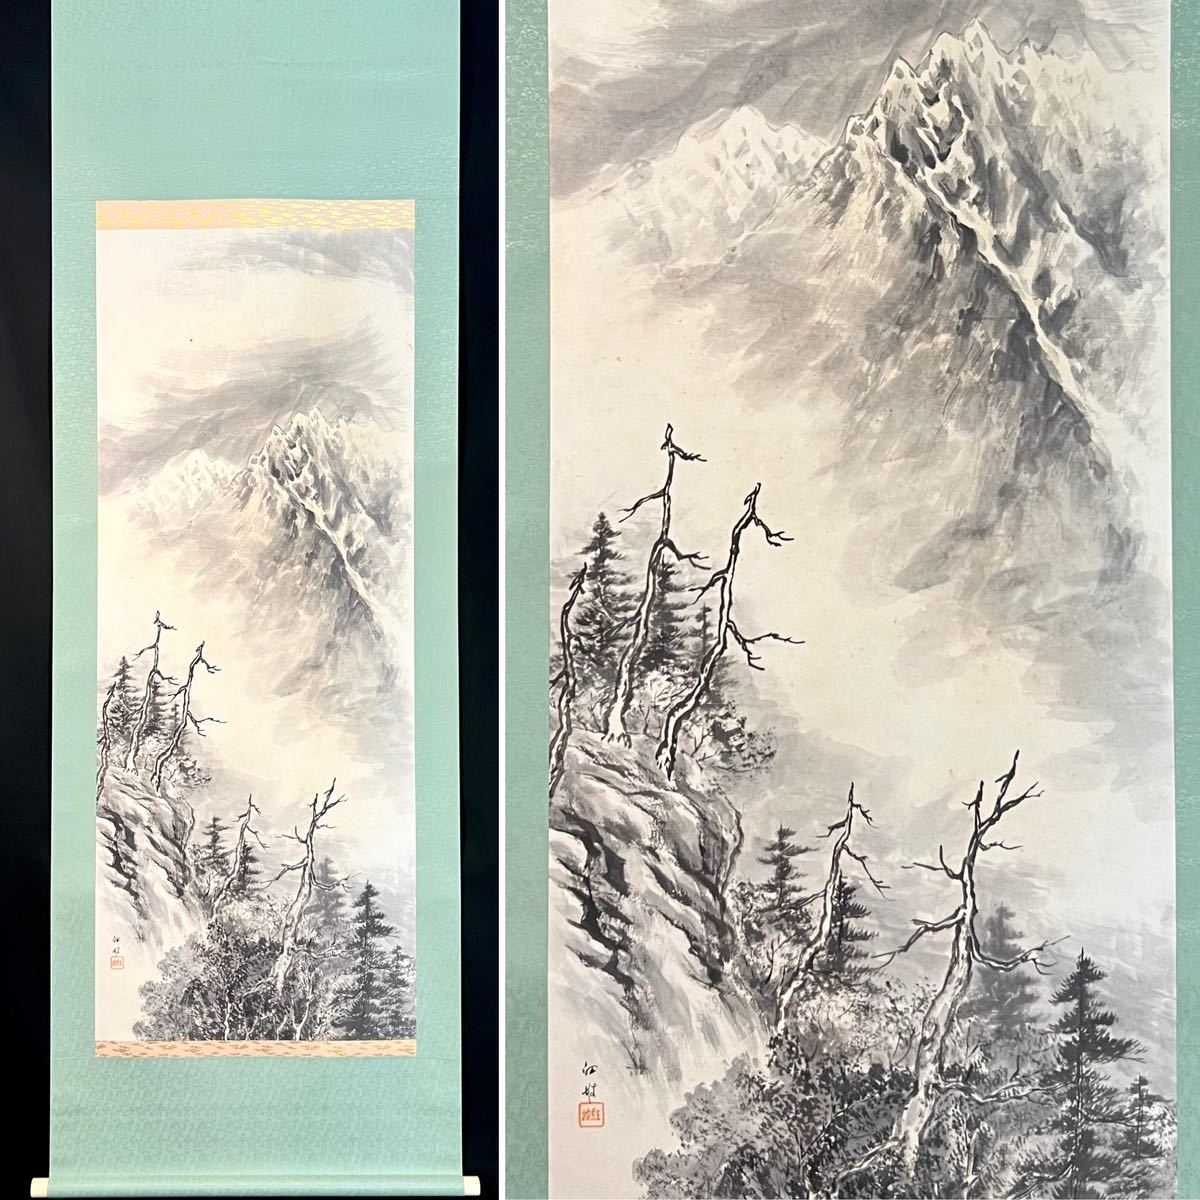 [प्रजनन] हांगपो का इंक लैंडस्केप लटकता हुआ स्क्रॉल, कागज़, परिदृश्य, चीन, चीनी कला, मानव द्वारा हाथ से चित्रित s021407, चित्रकारी, जापानी चित्रकला, परिदृश्य, हवा और चाँद